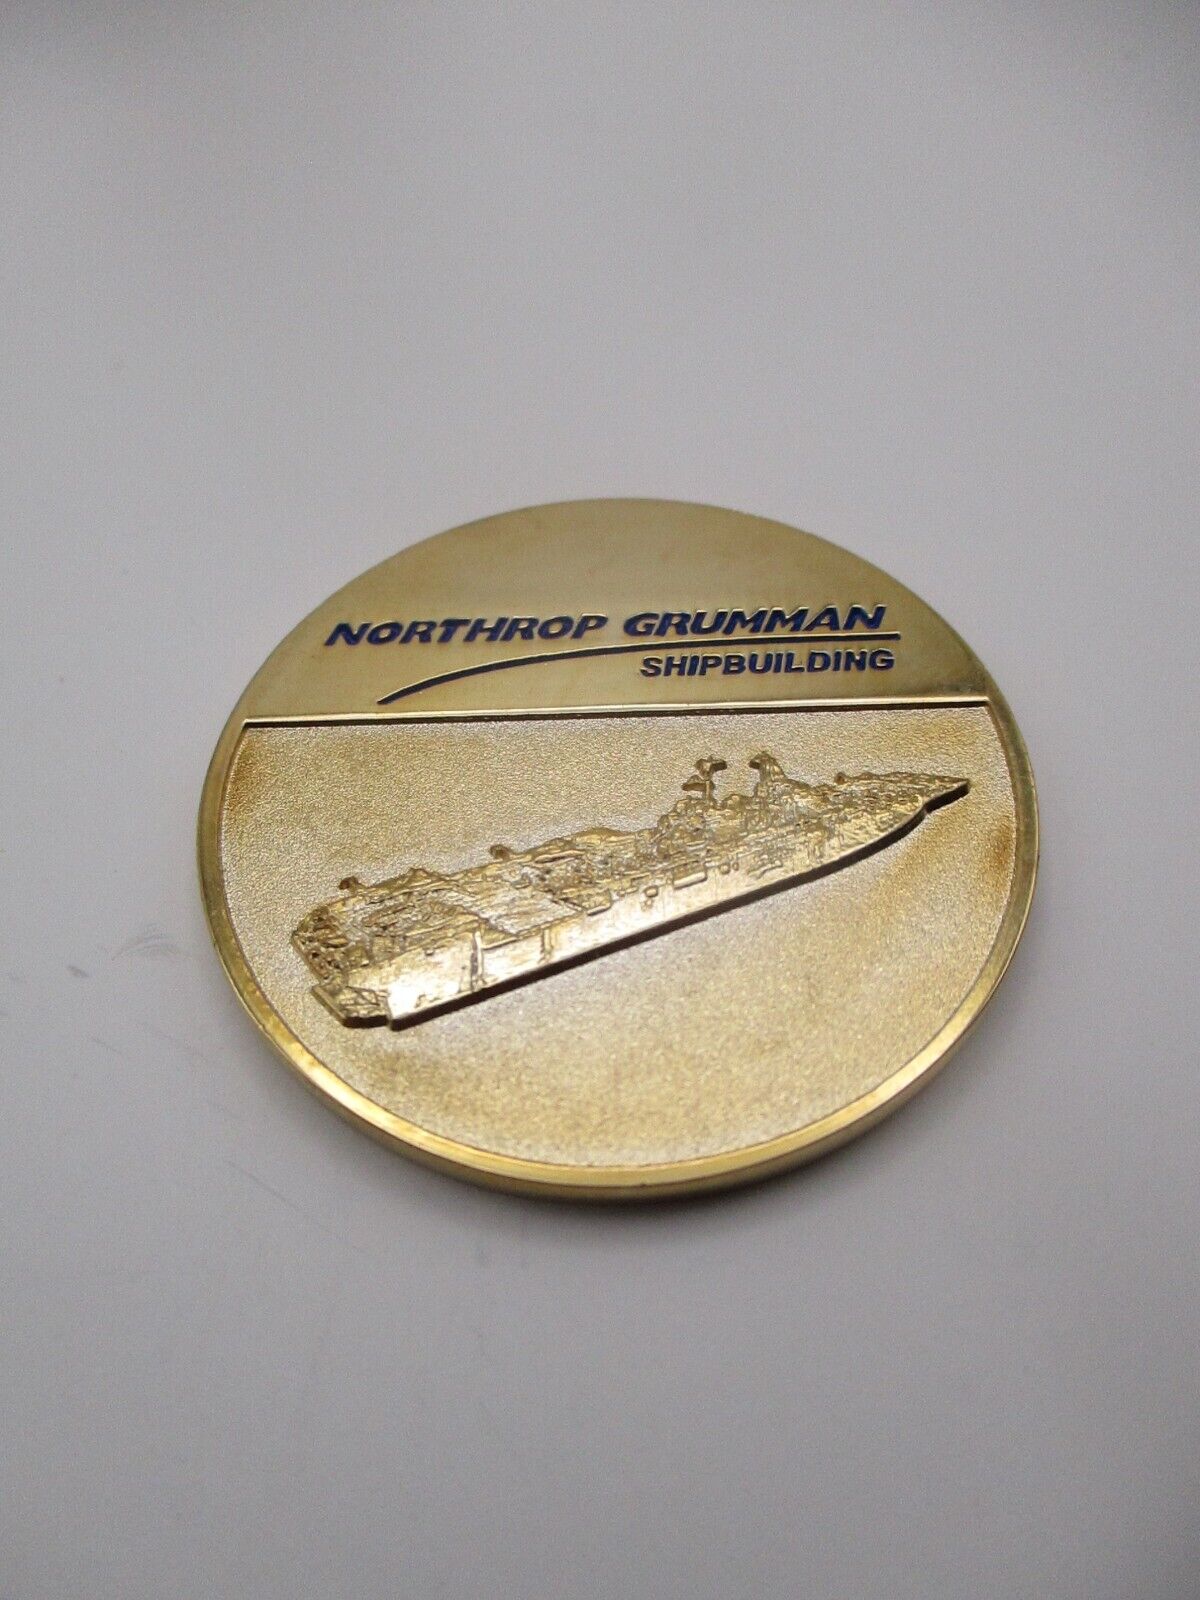 RARE Northrop Grumman Shipbuilding Challenge Coin